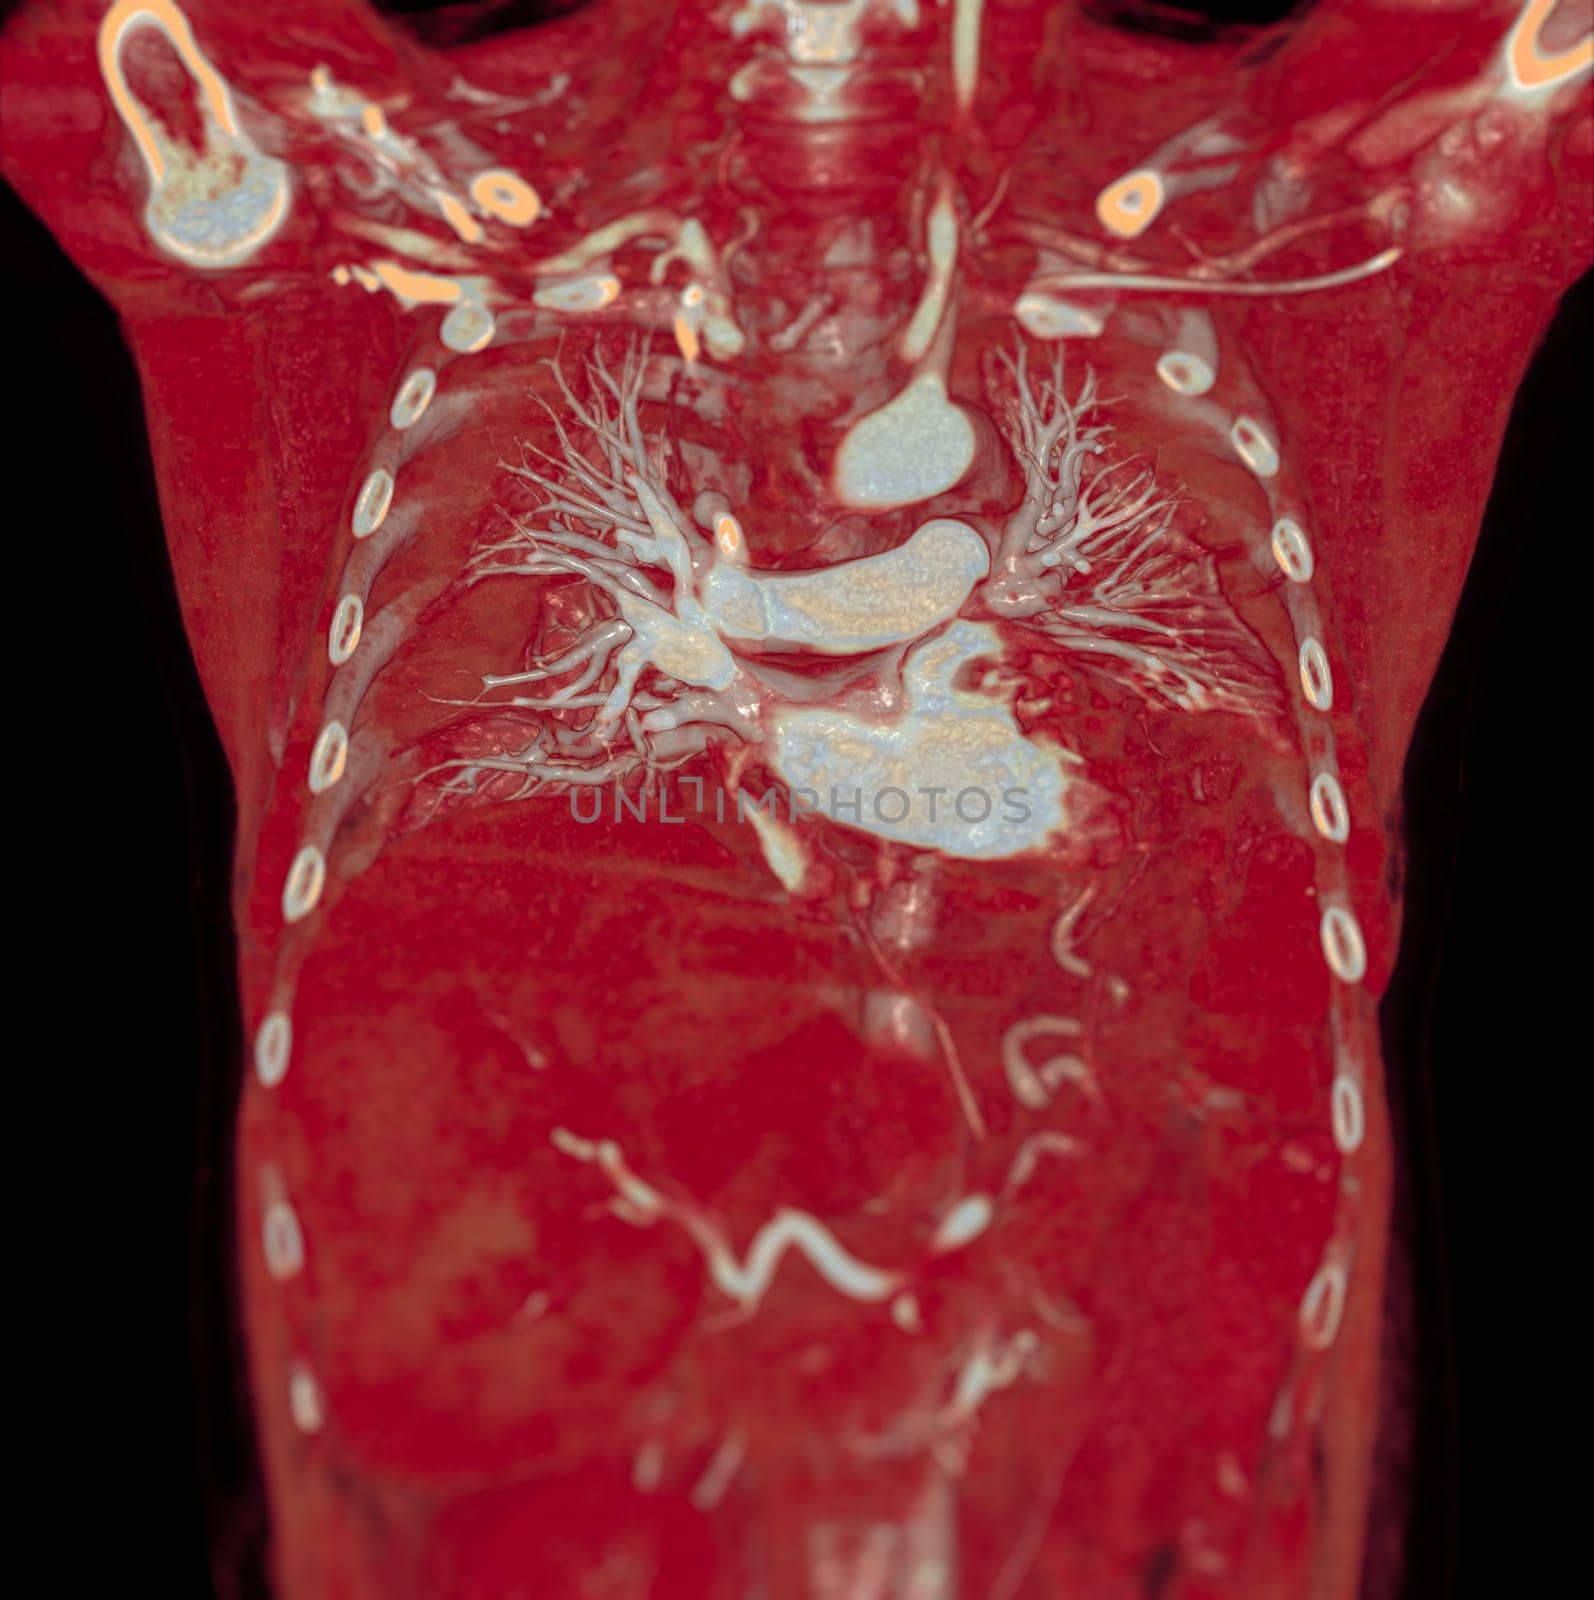 CTA pulmonary arteries 3D rendering showing branch of pulmonary artery